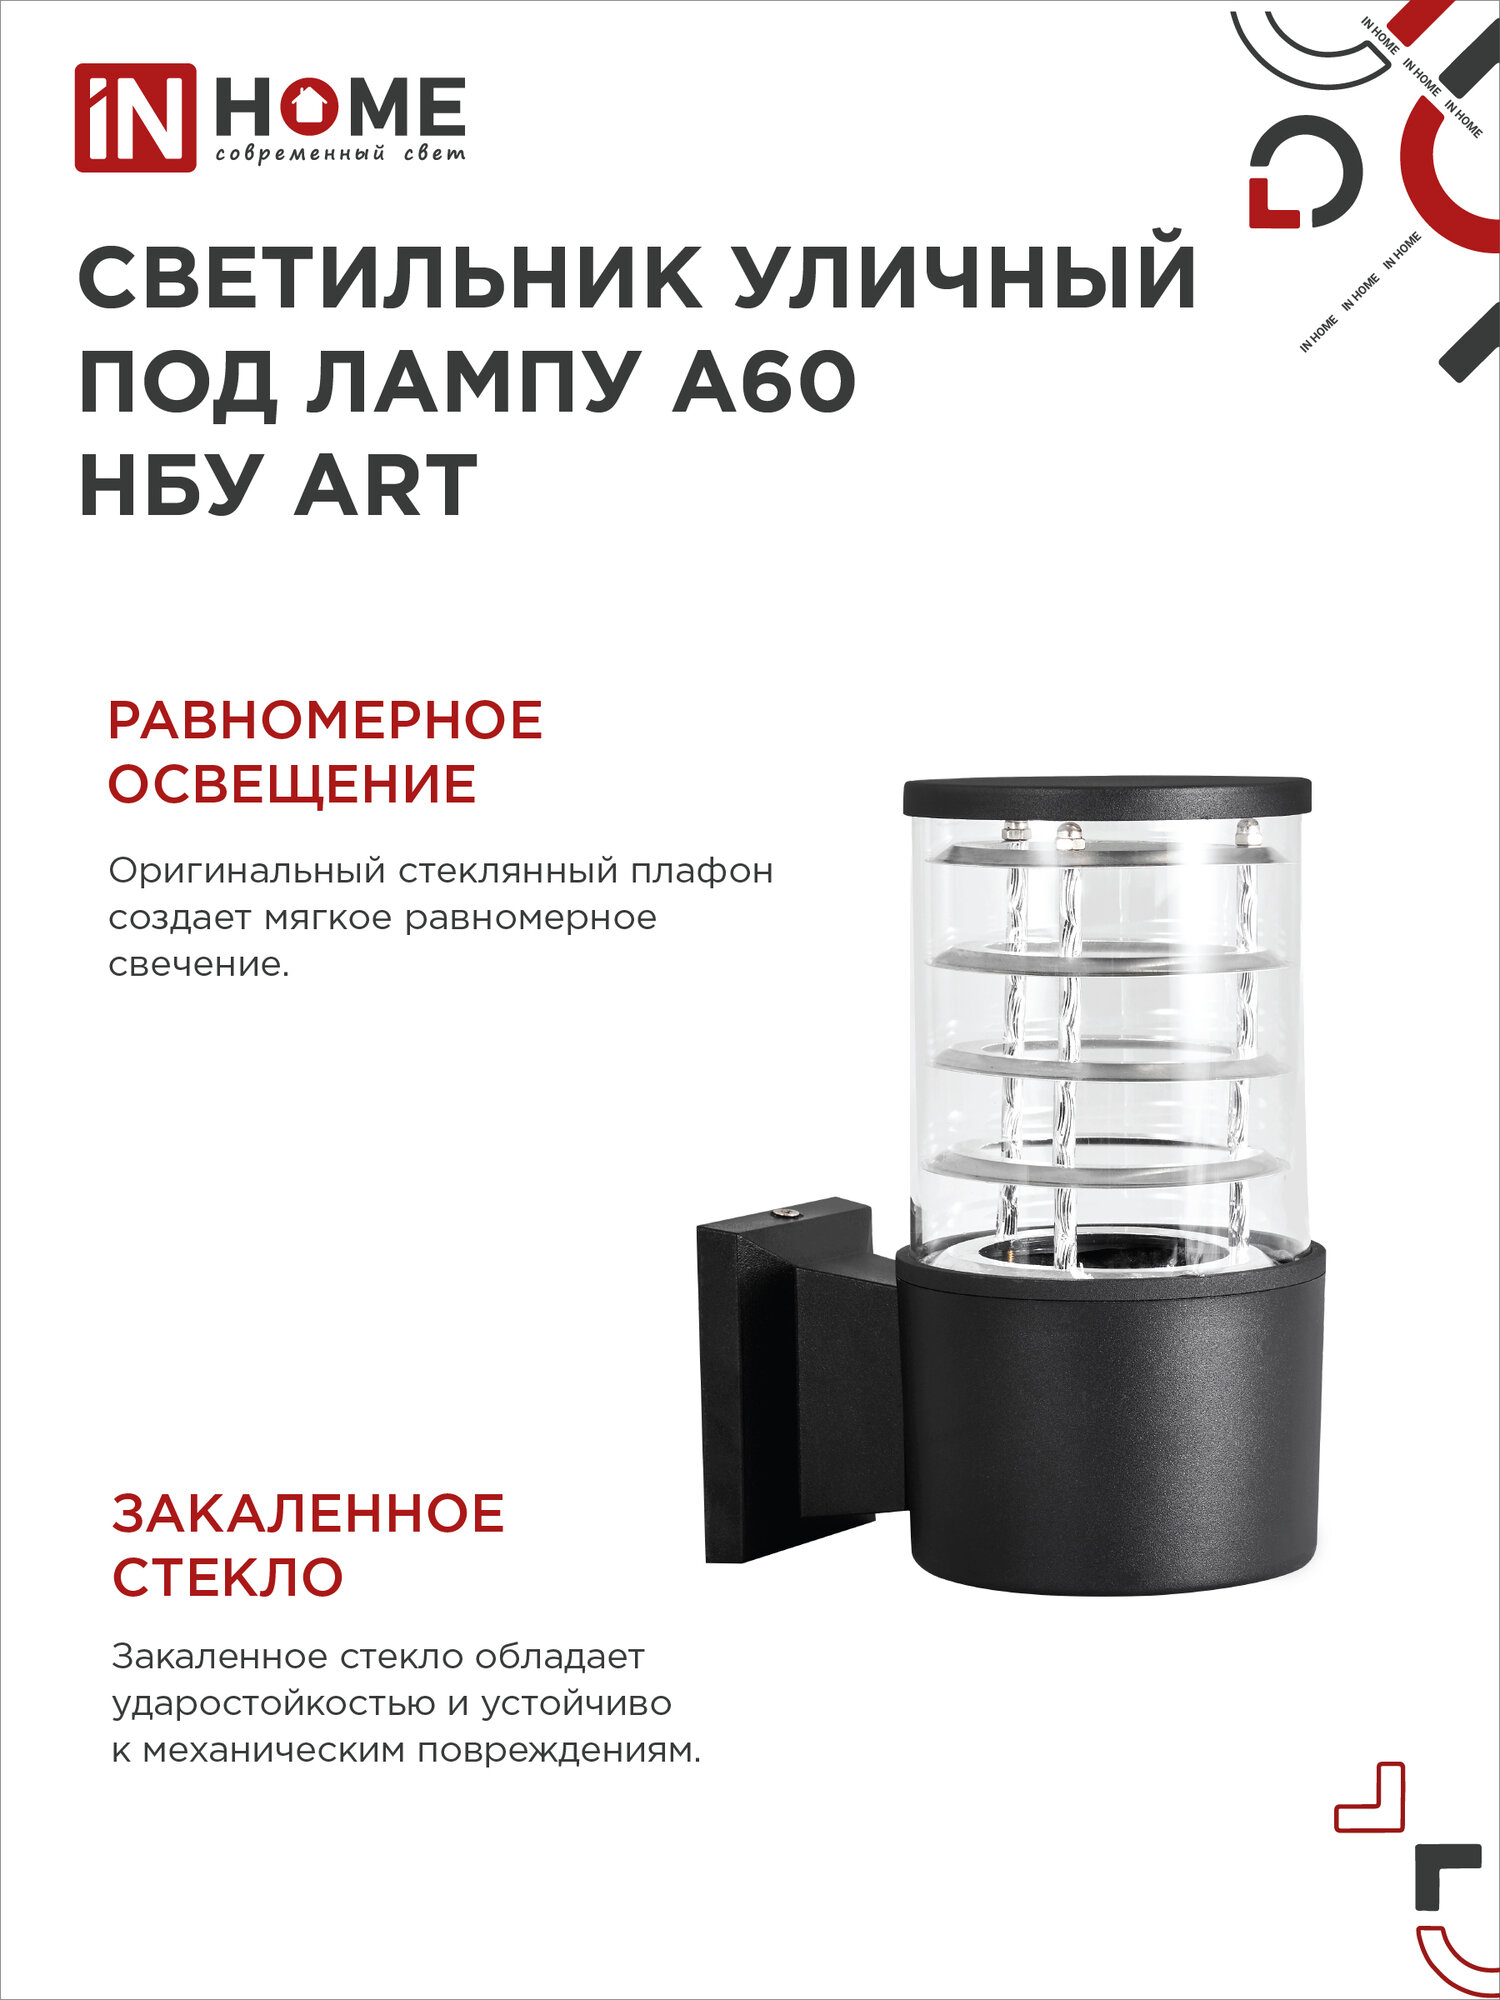 Светильник уличный односторонний НБУ ART-1хA60-BL алюминиевый под лампу 1хA60 E27 230B черный IP54 IN HOME